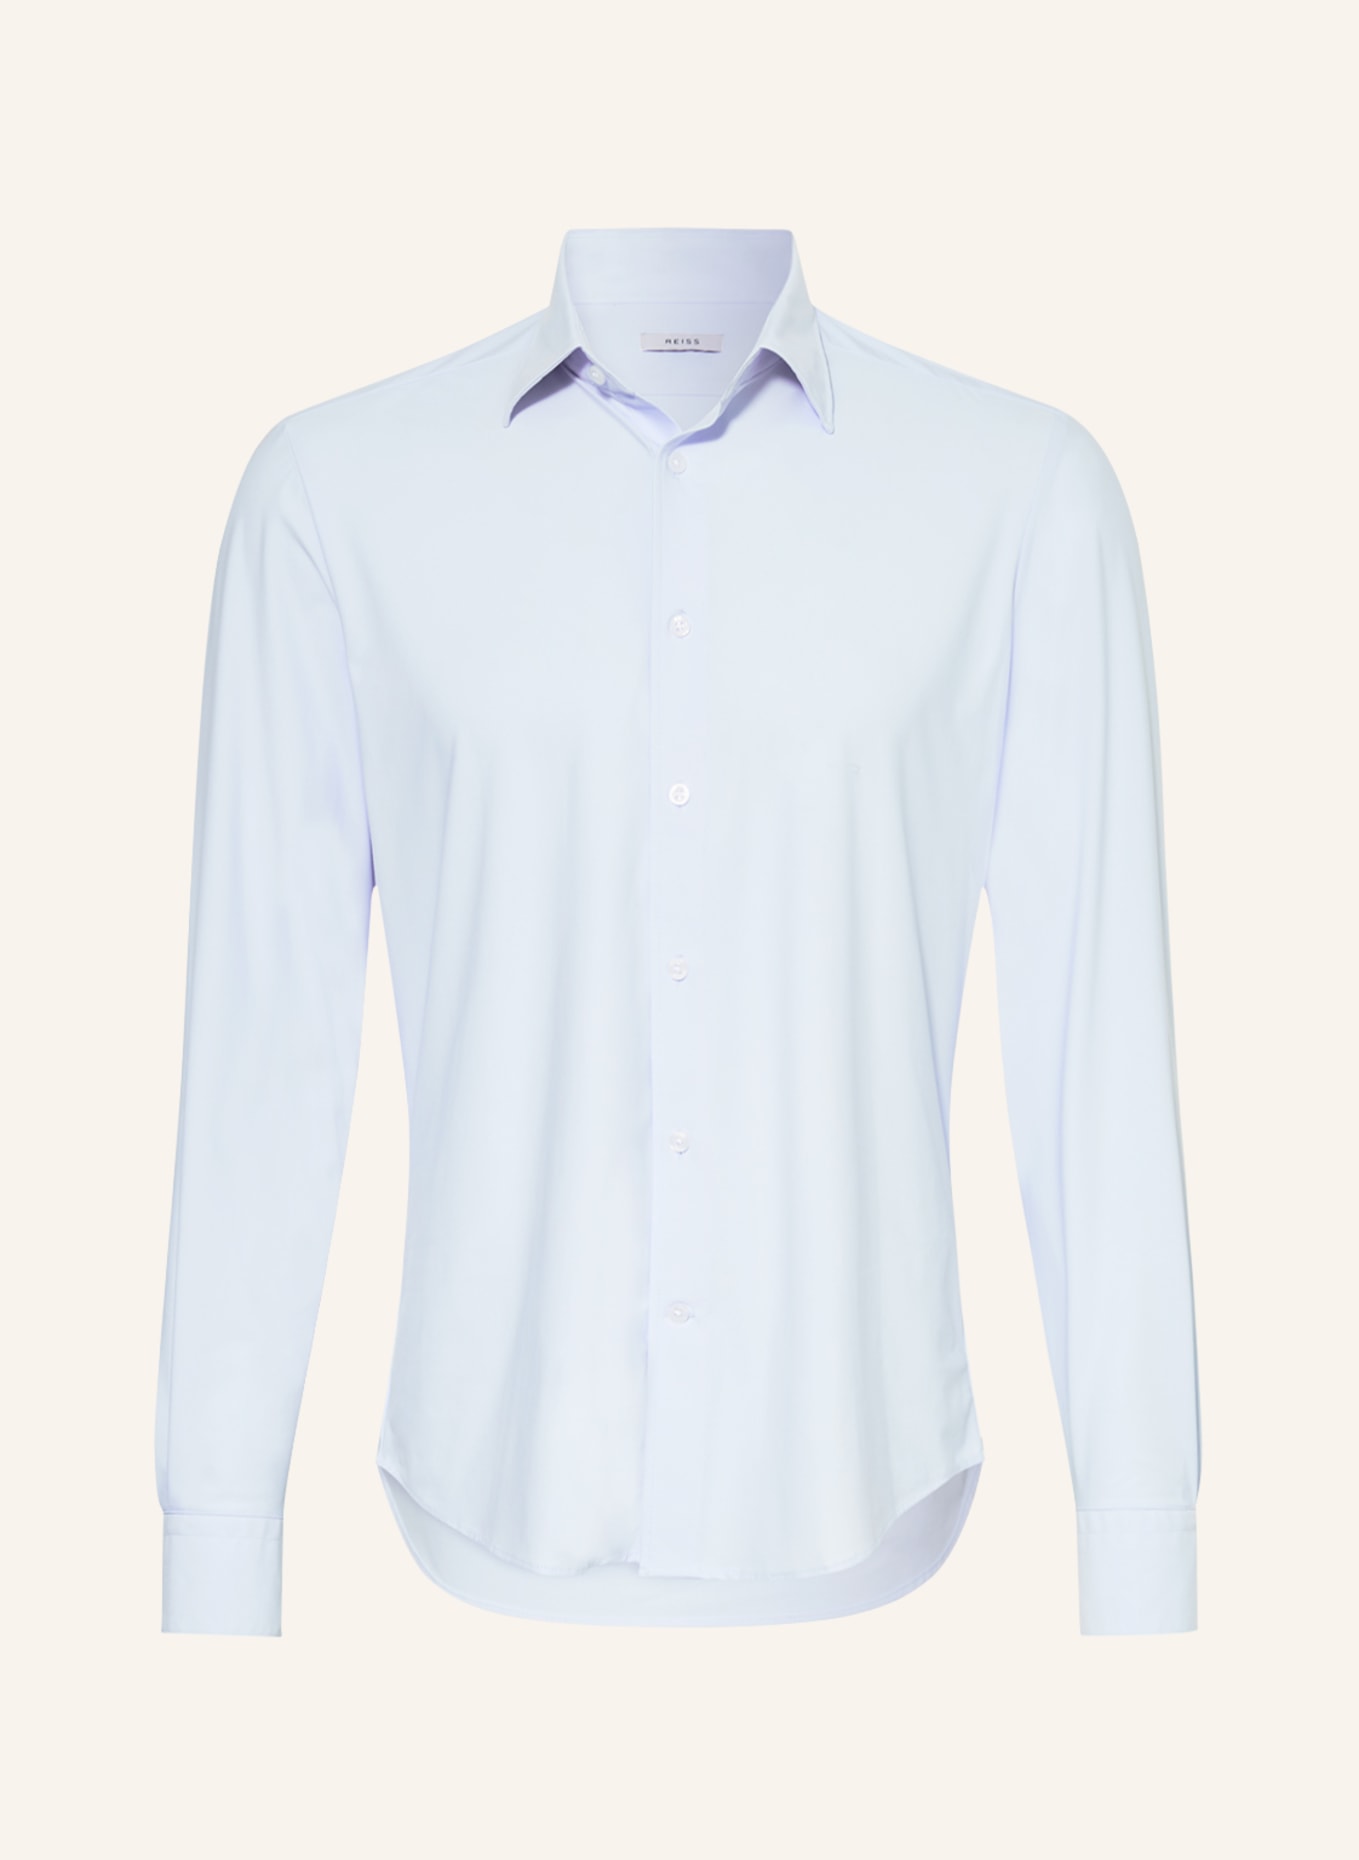 REISS Jersey shirt VOYAGER regular fit, Color: LIGHT BLUE (Image 1)